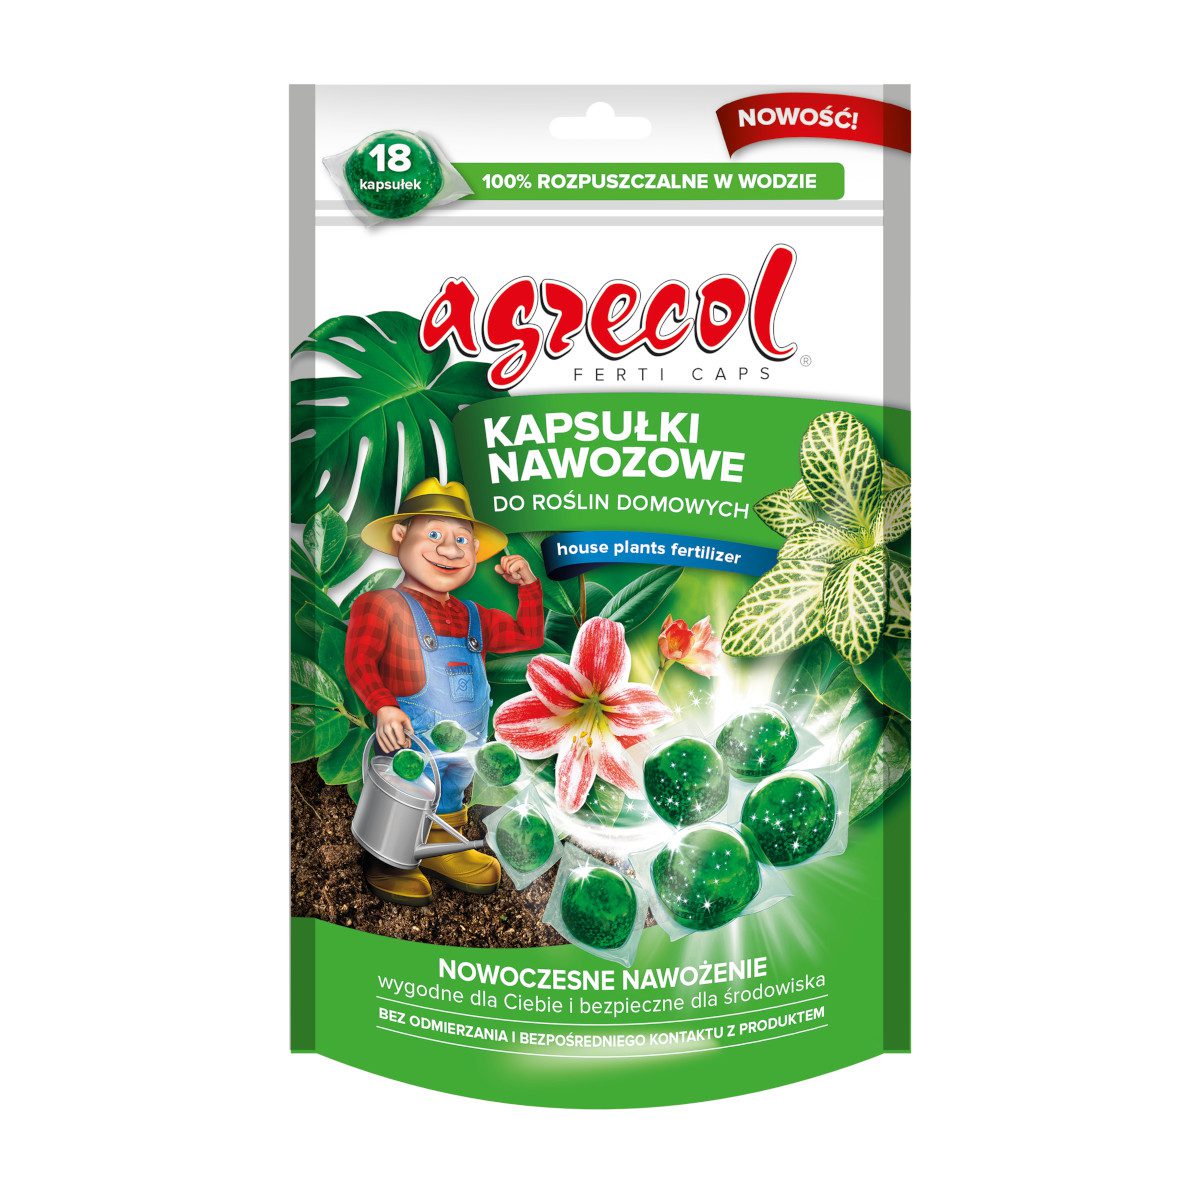 Agrecol FERTICAPS Kapsułki nawozowe do roślin domowych 18szt